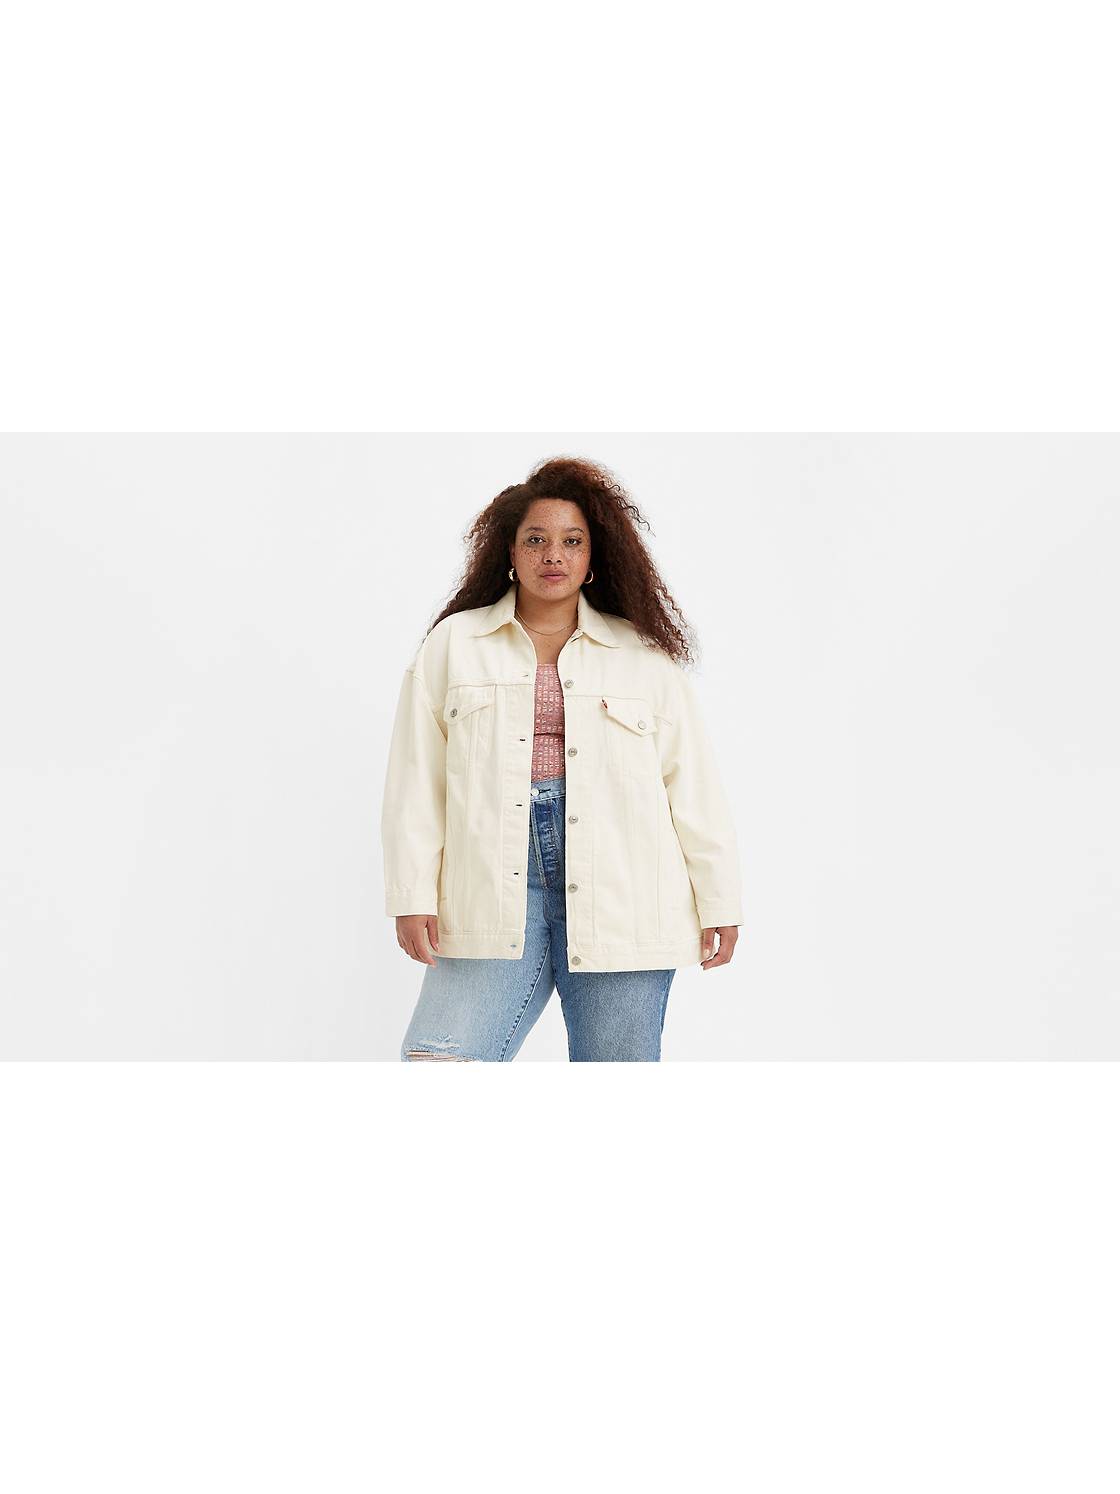 Plus Size Jackets for Women: Shop Women's Jean Jackets